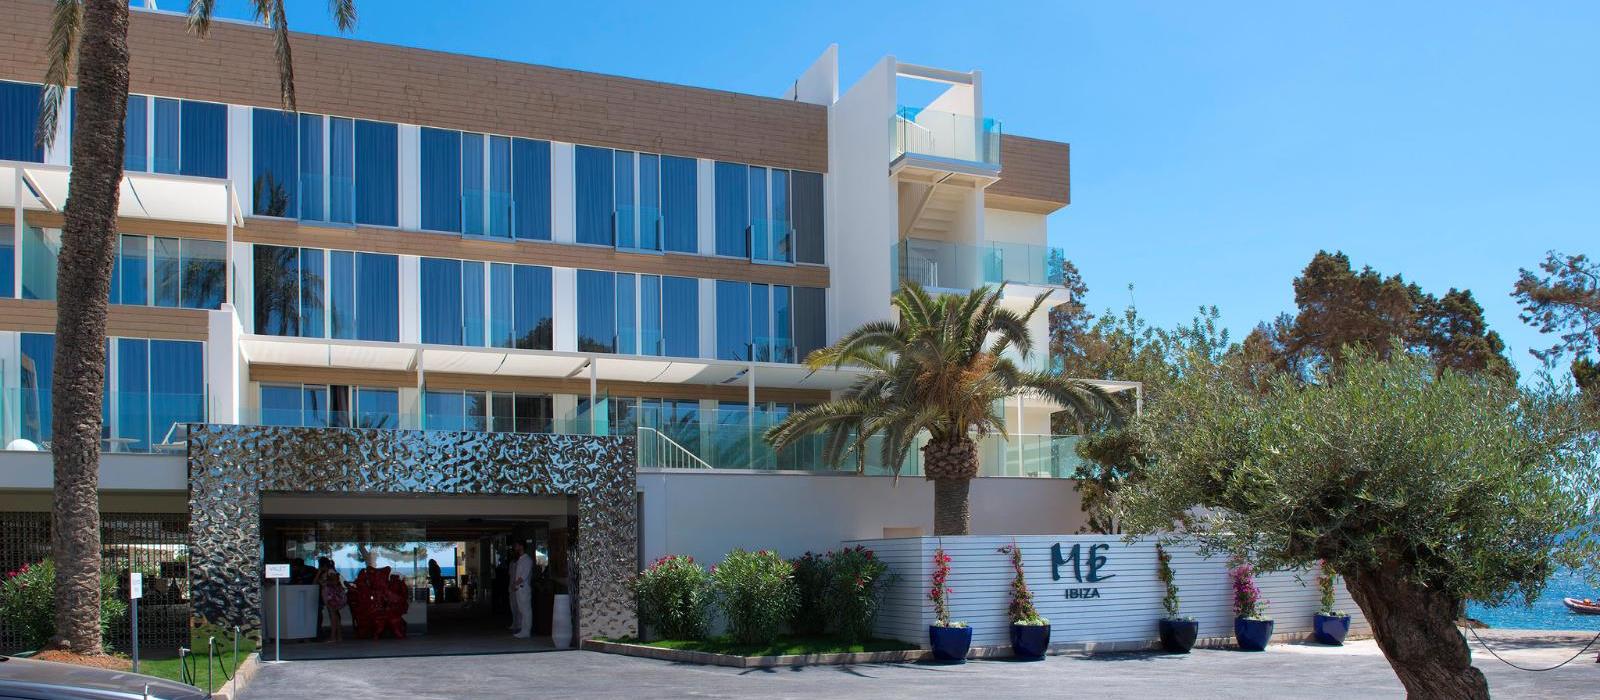 ME伊比沙大酒店(ME Ibiza) 图片  www.lhw.cn